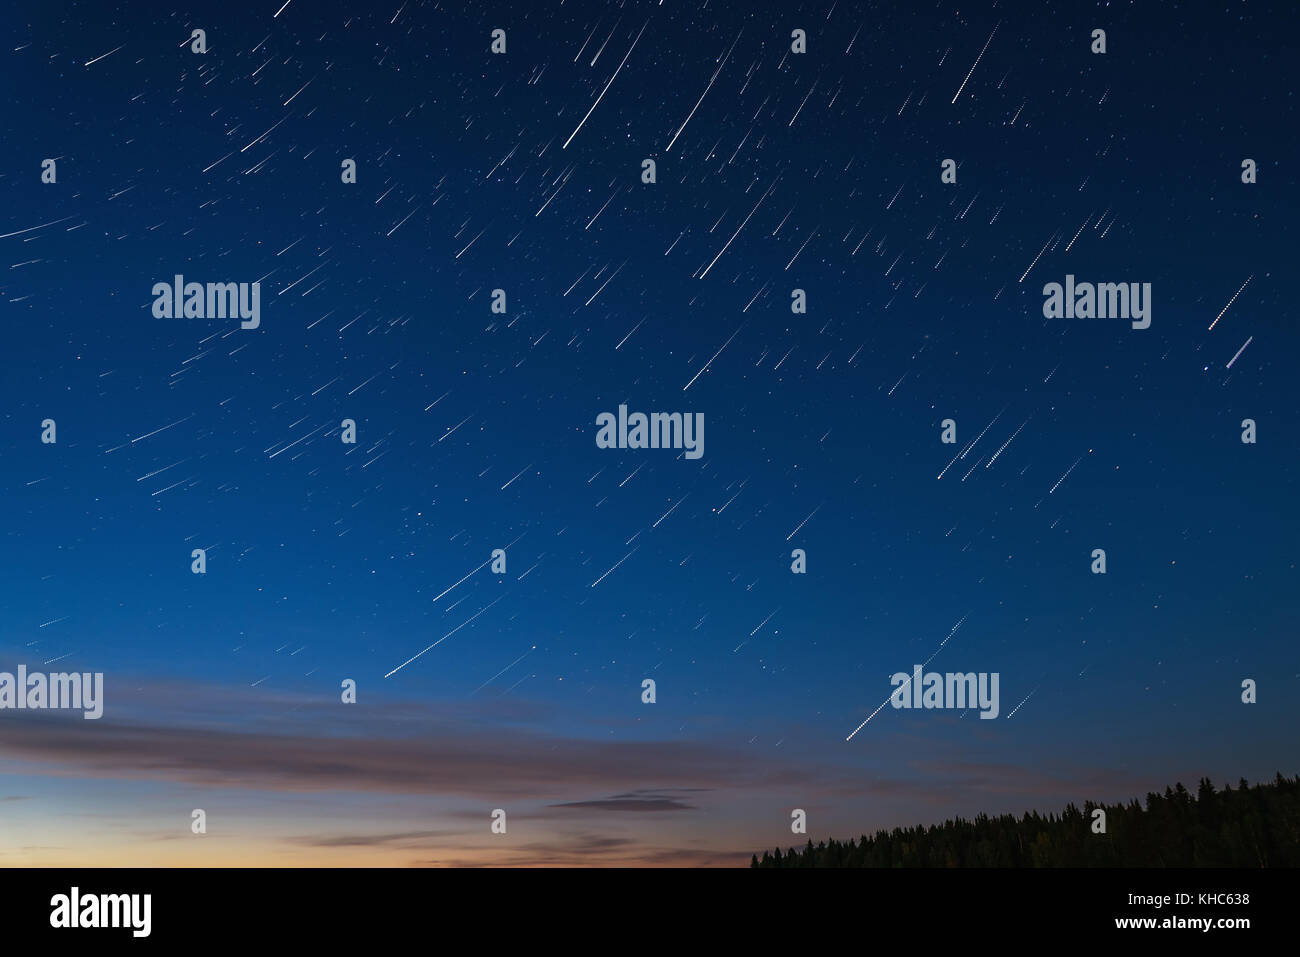 Abstract dekorative Hintergrund mit Spuren von Stars gegen den Nachthimmel, Schuß lange Belichtung Stockfoto